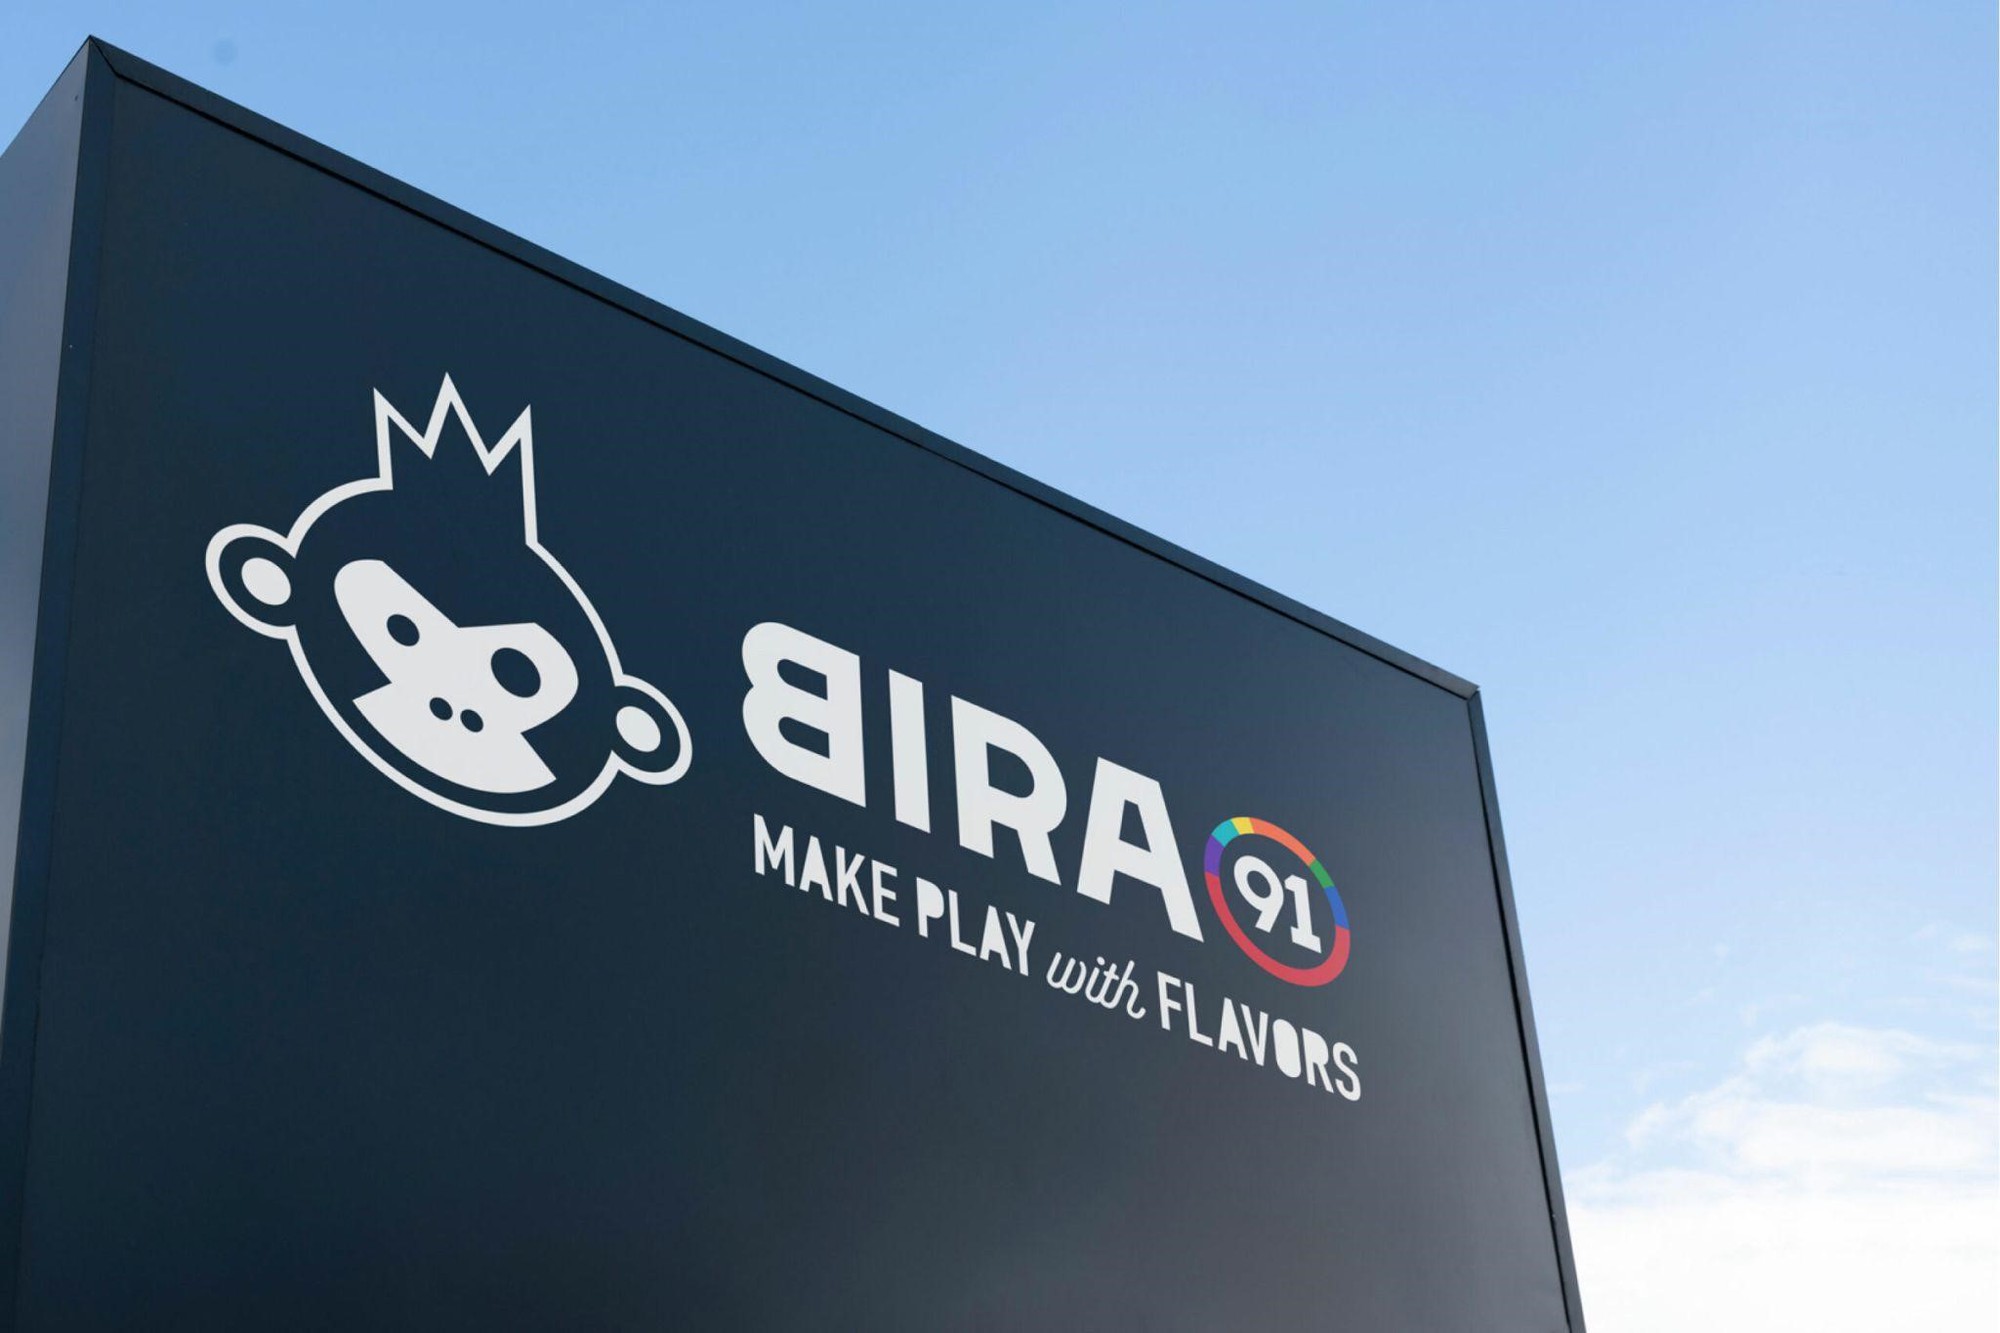 Bira 91 trở thành công ty đại chúng, mở rộng quỹ ESOP